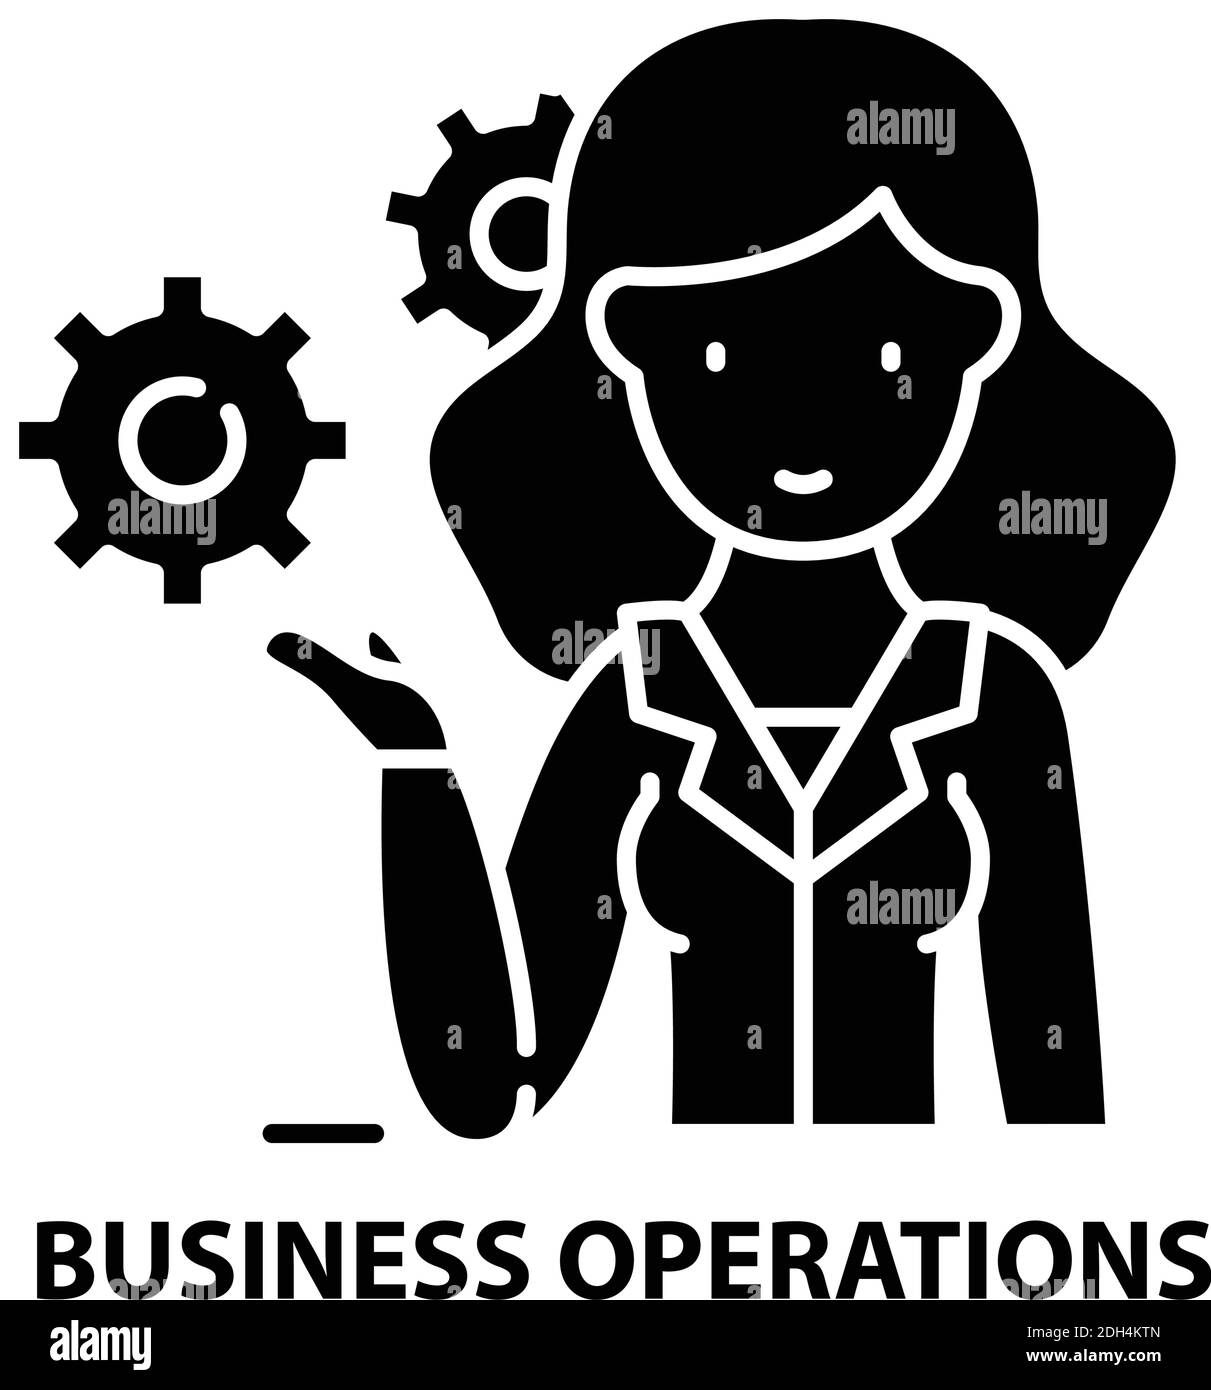 icona operazioni aziendali, segno vettoriale nero con tratti modificabili, illustrazione concettuale Illustrazione Vettoriale